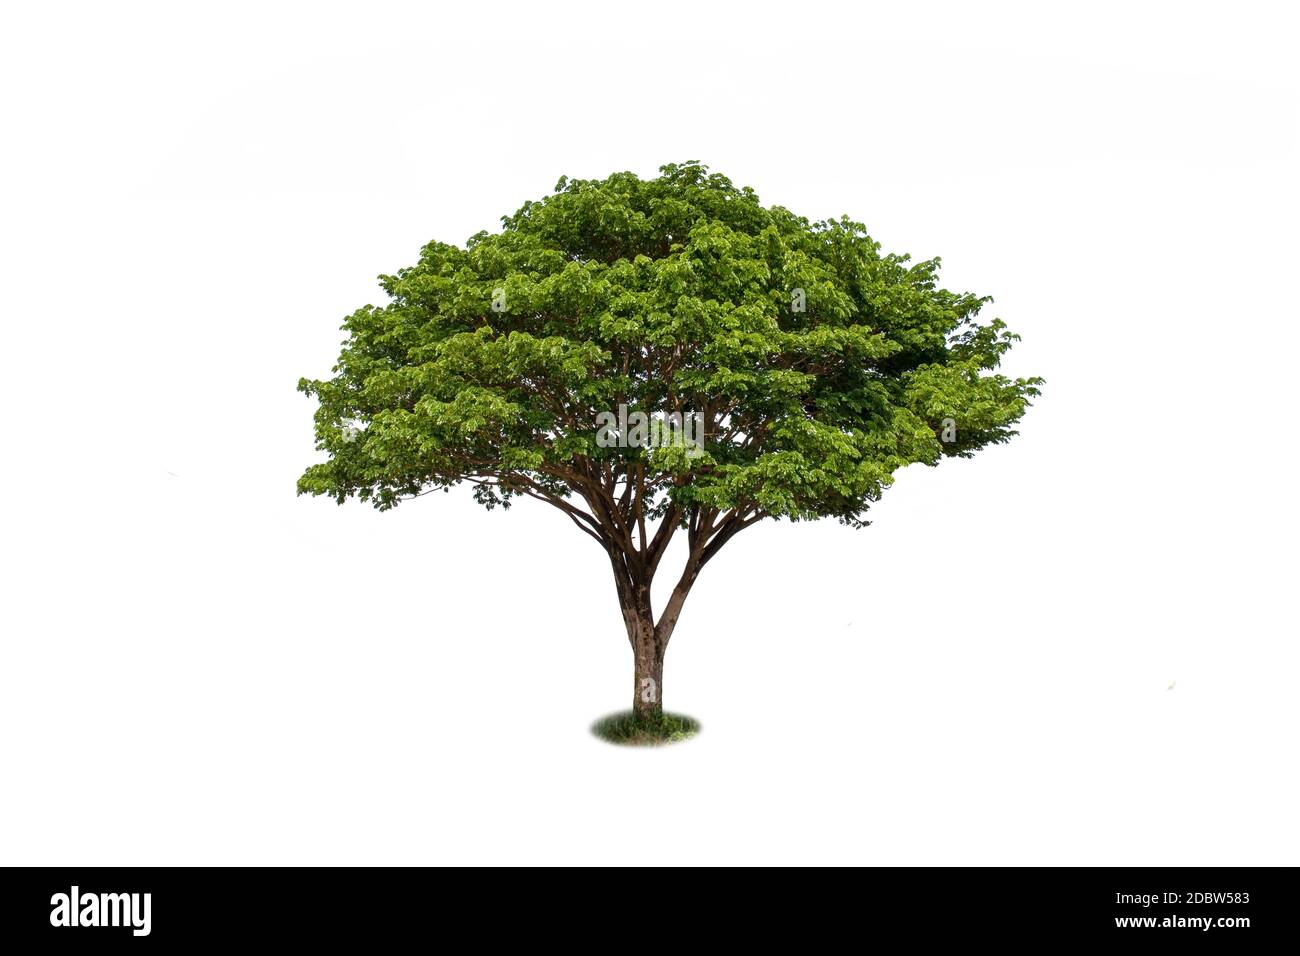 Ostindischer Walnussbaum, grüner Regenbaum oder Affenrute auf weißem Hintergrund mit dem Kletterpfad. Stockfoto